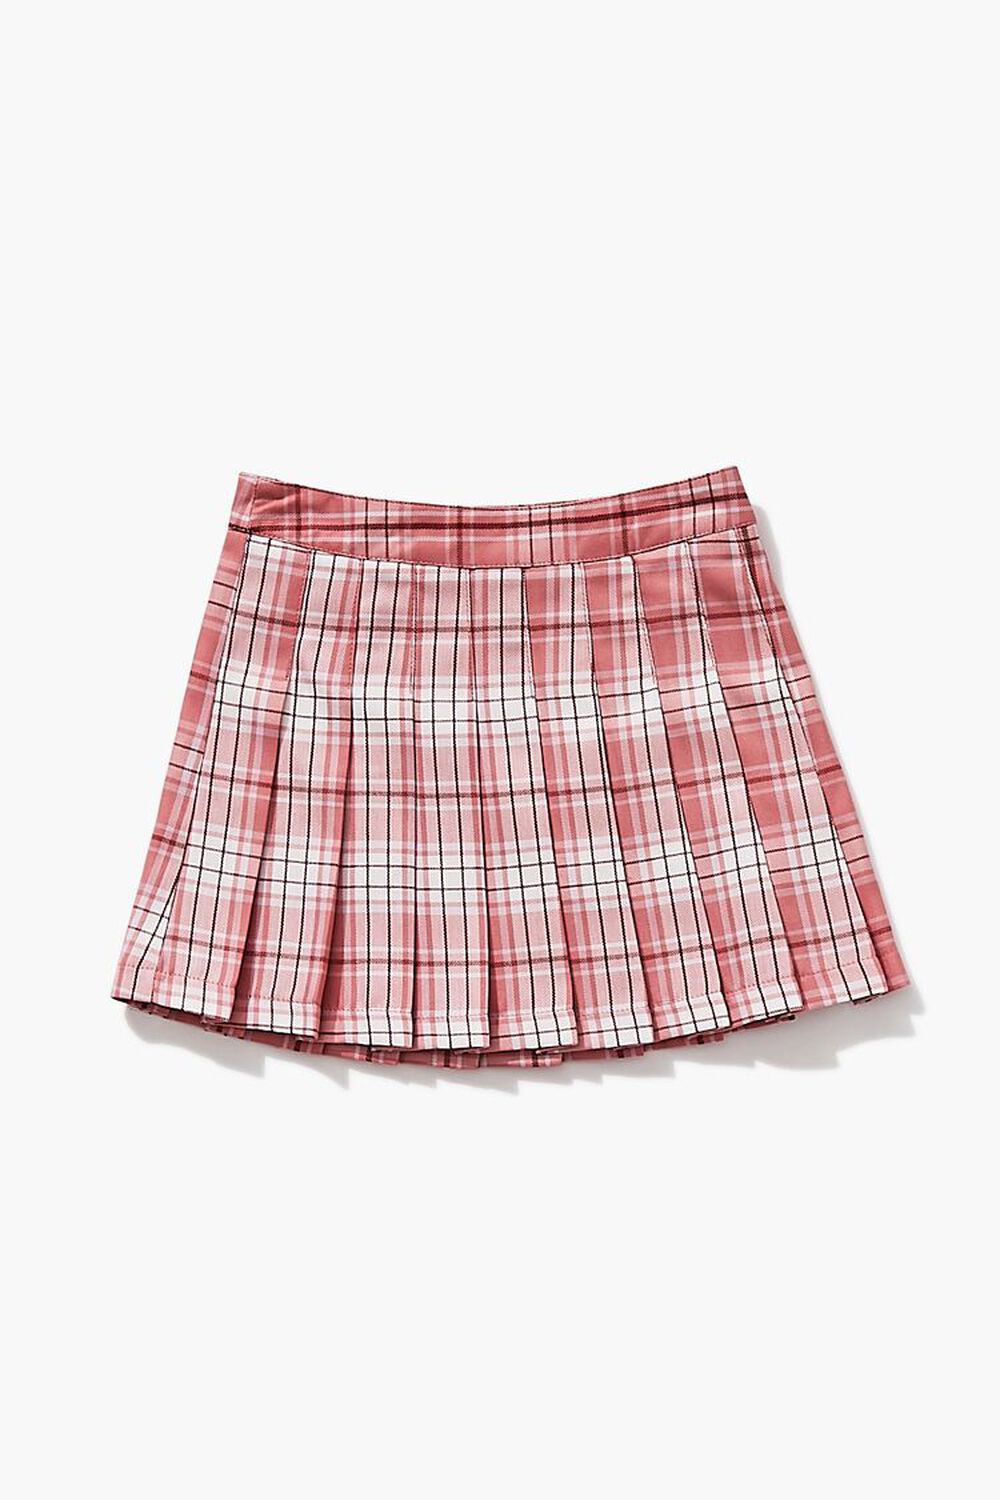 Girls Pleated Plaid Skirt (Kids), image 2